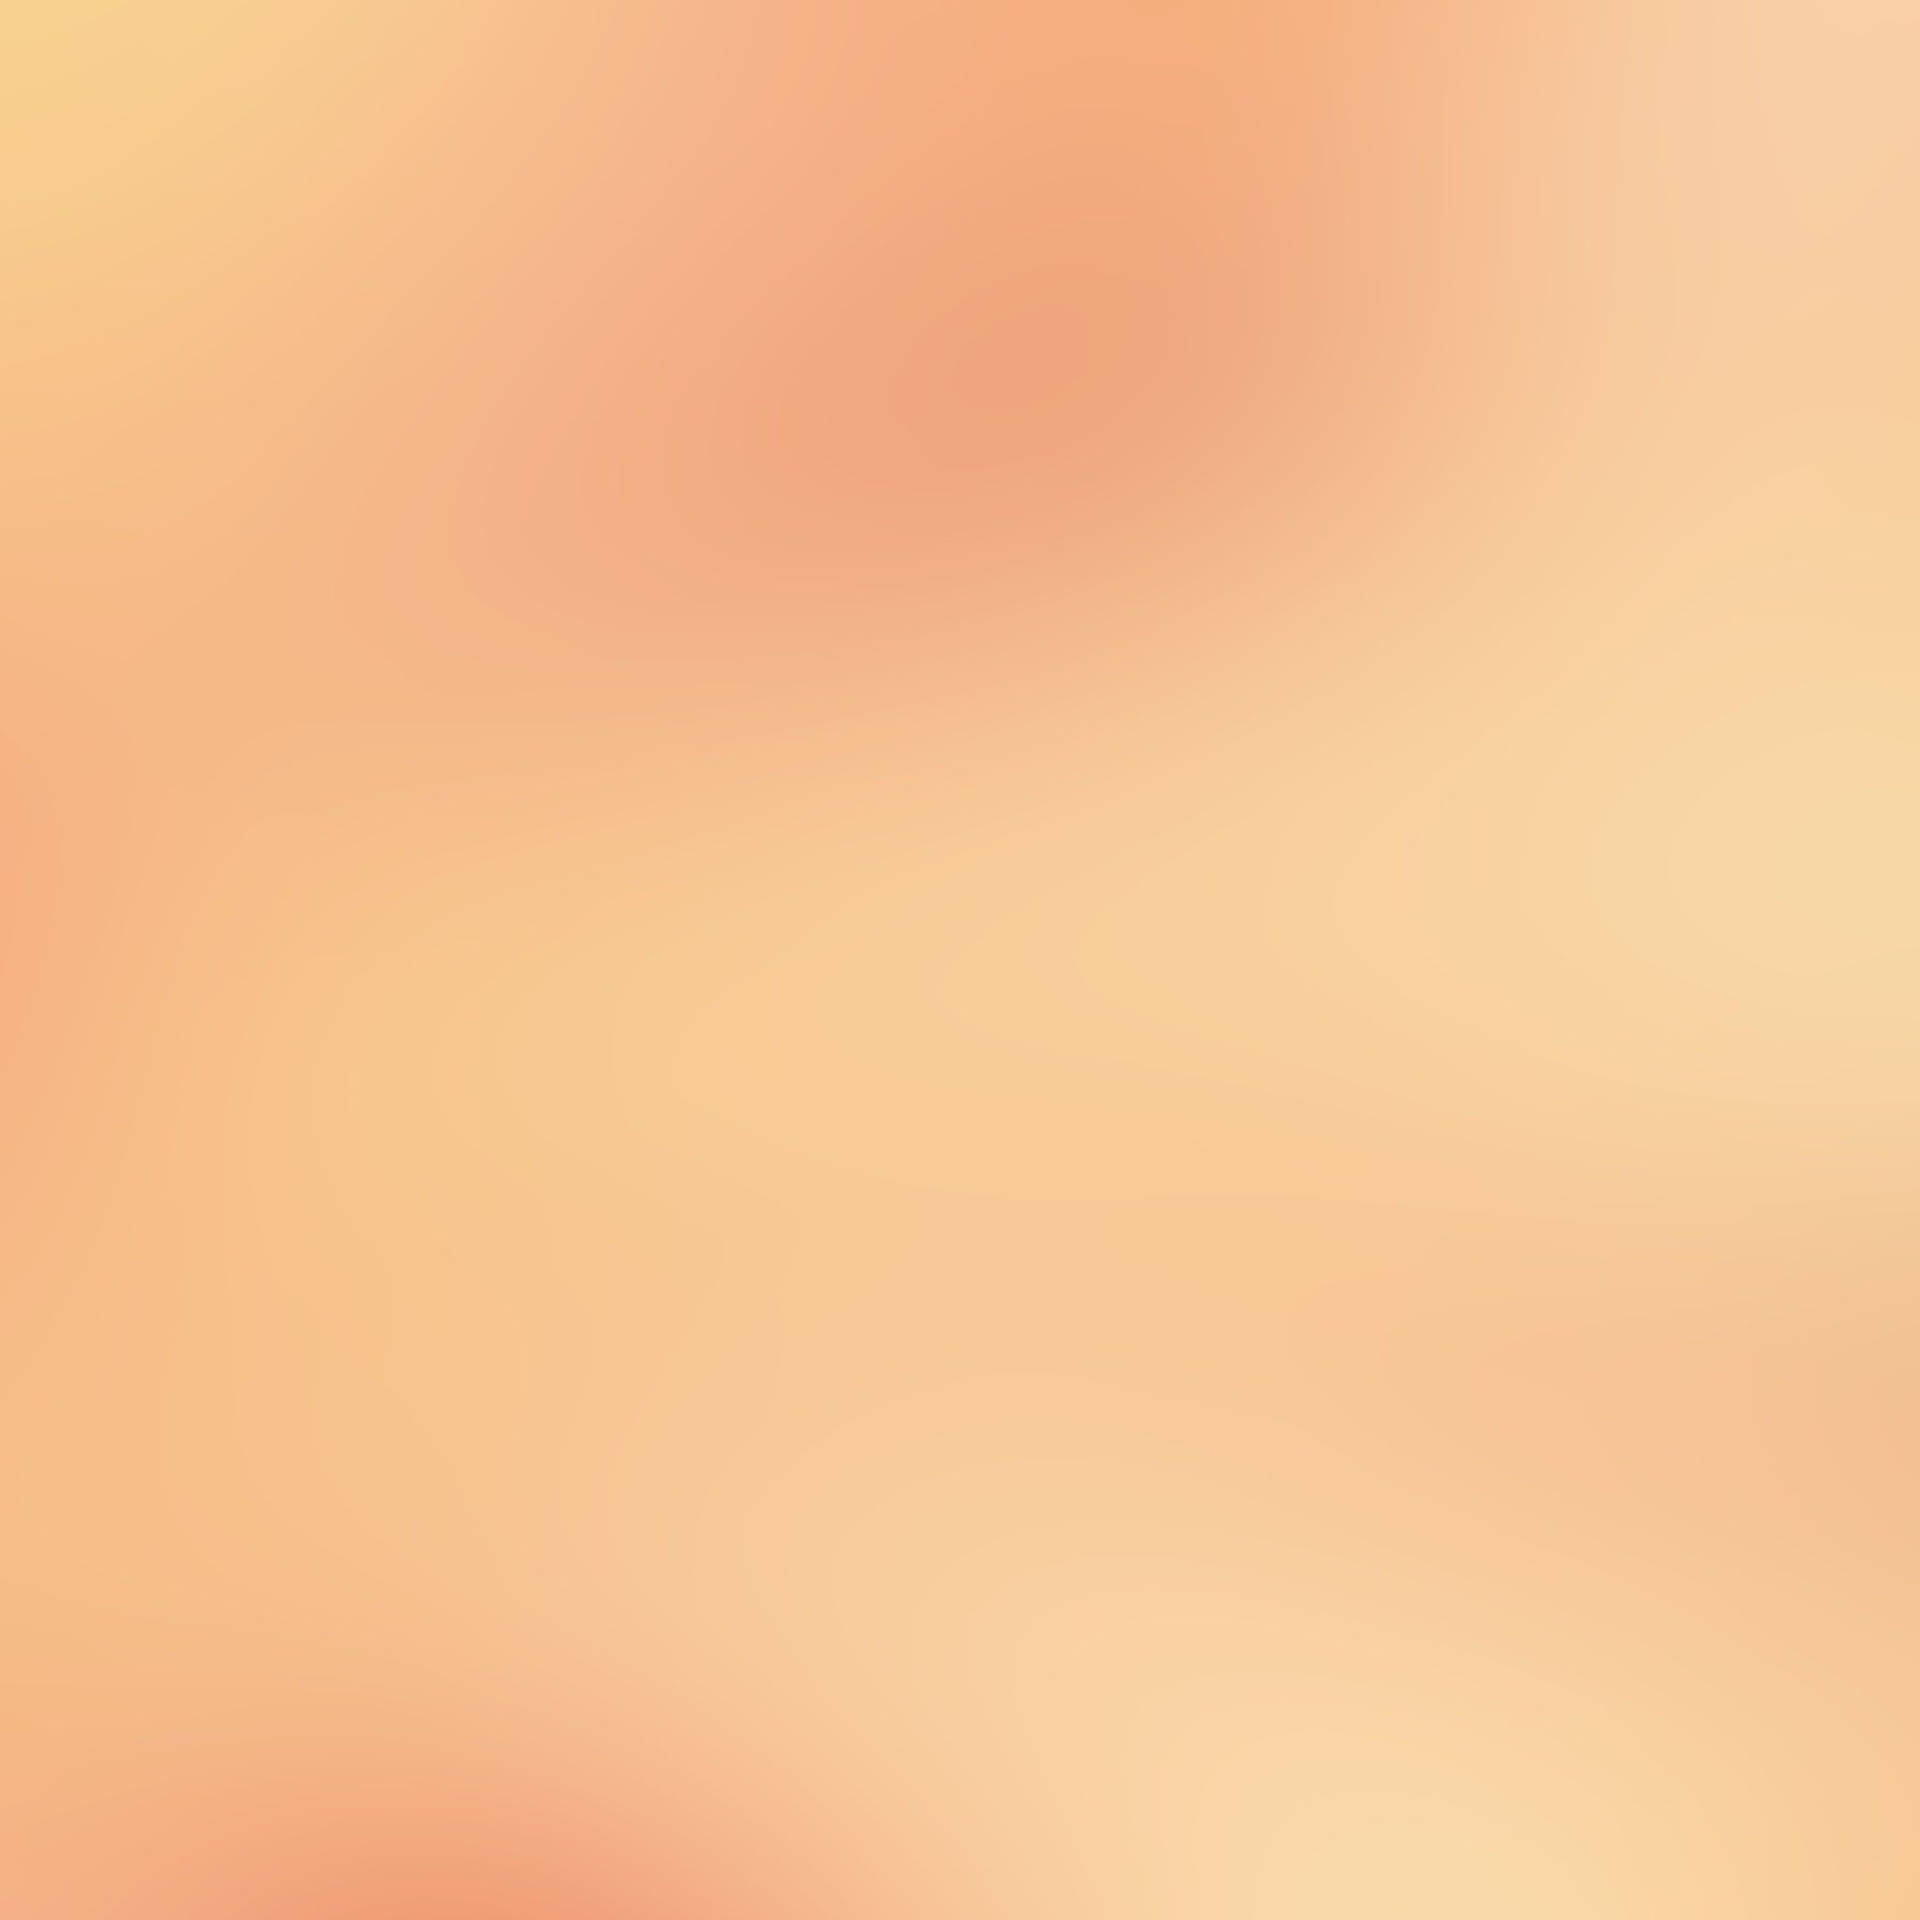 Peach Brown Gradient Background